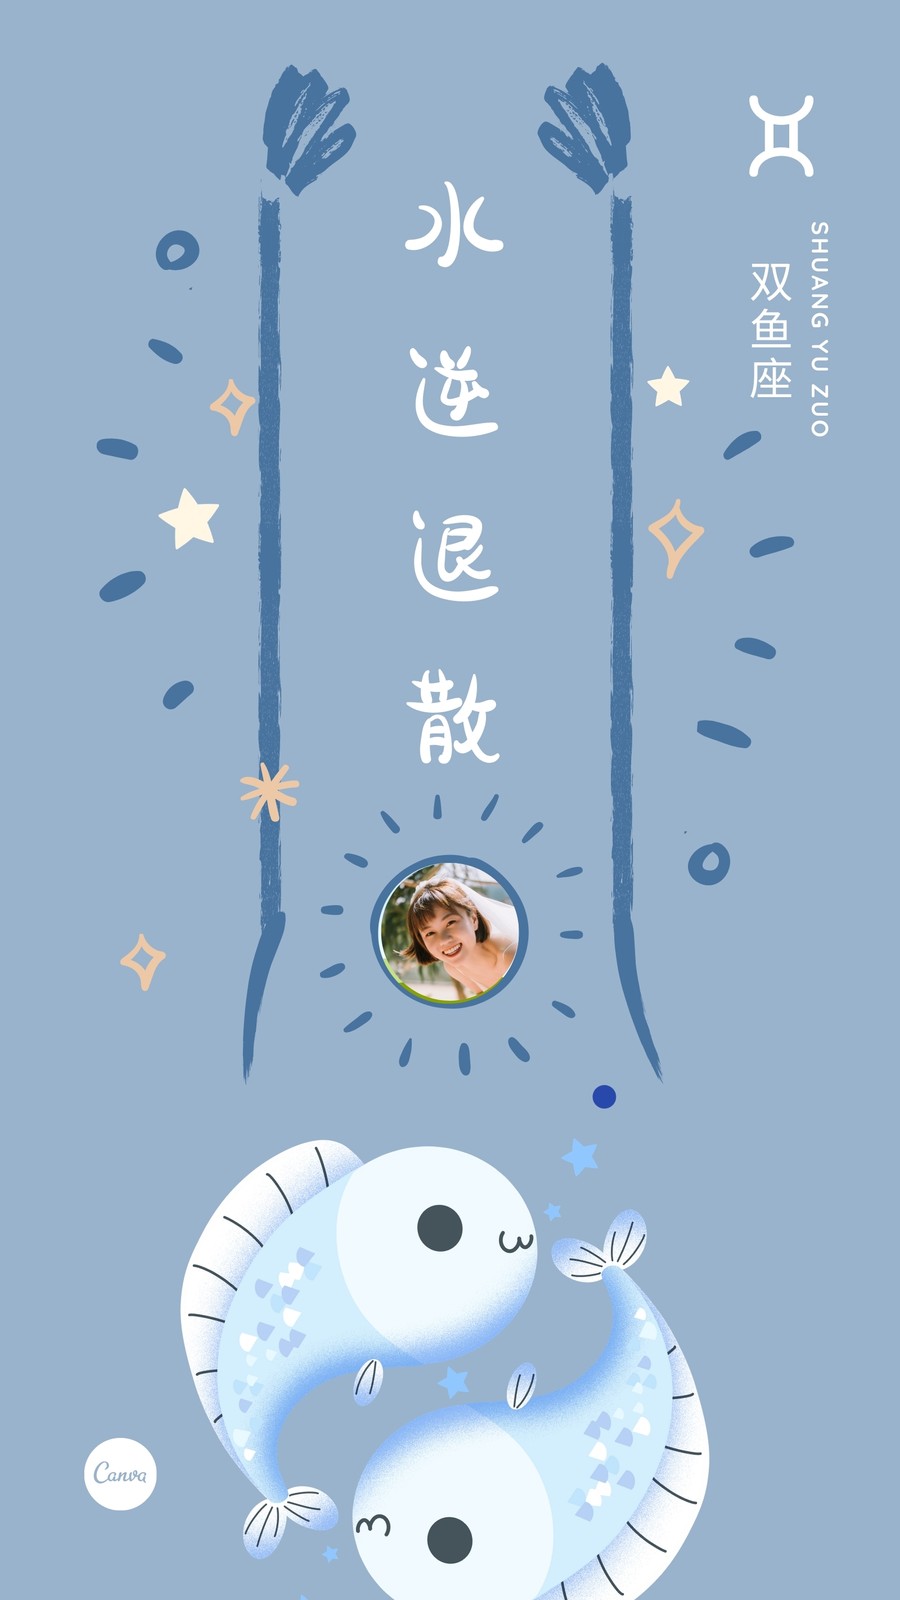 灰蓝色双鱼座水逆退散十二星座可爱星座个人分享中文手机壁纸